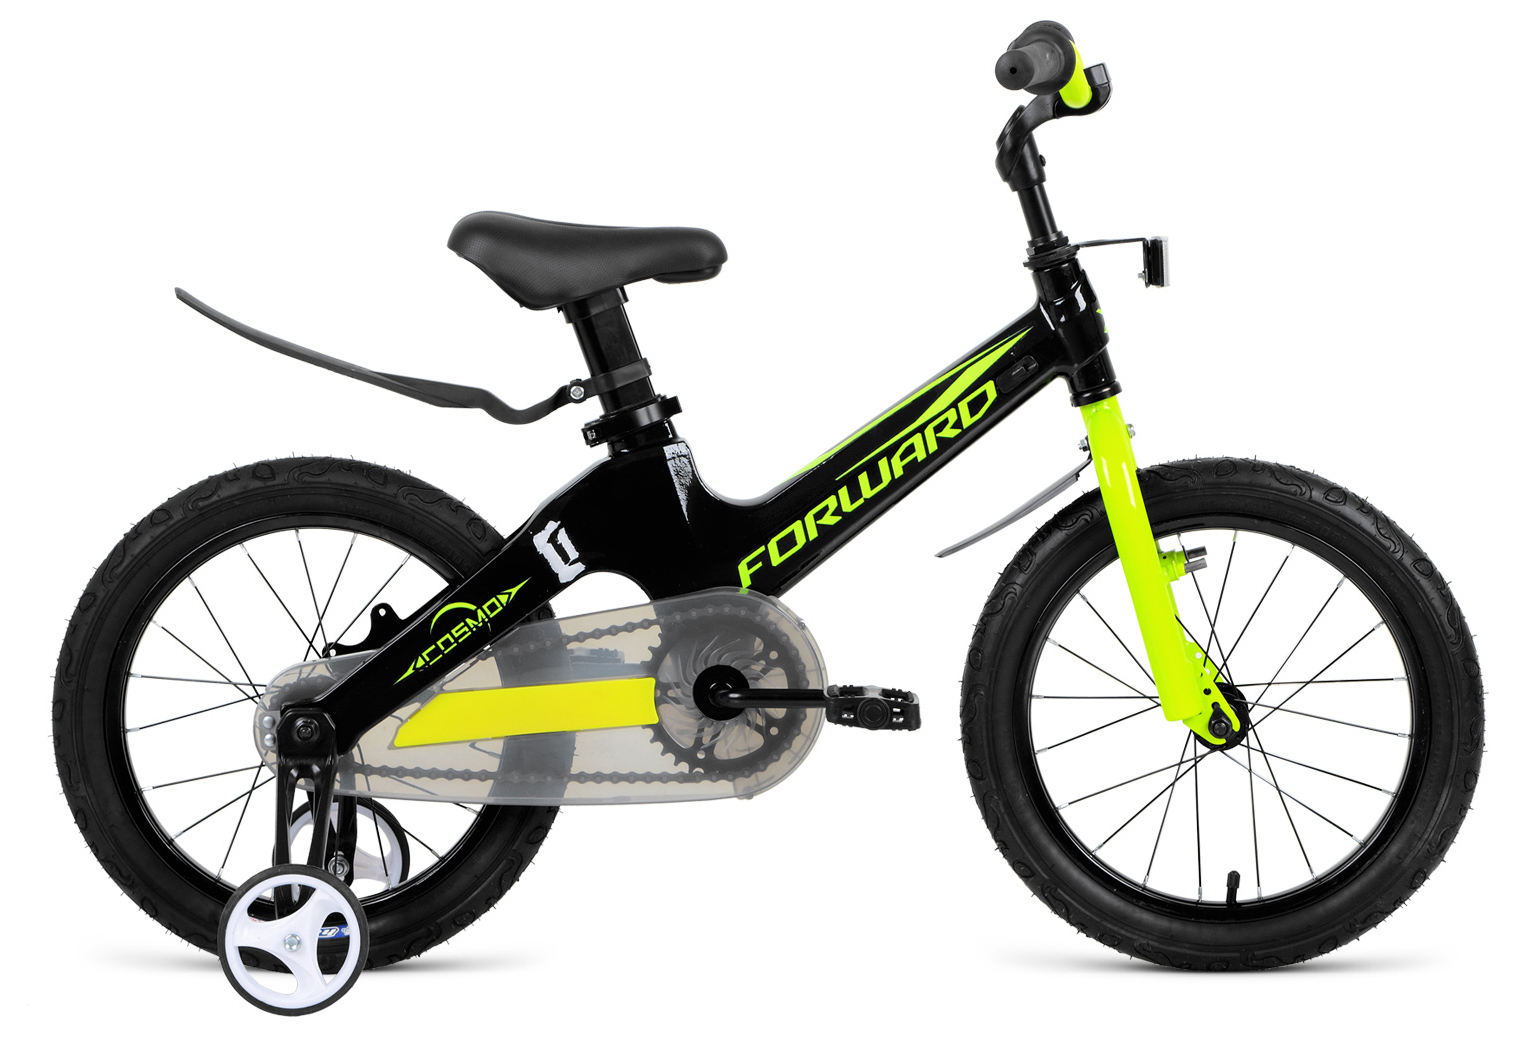  Отзывы о Детском велосипеде Forward Cosmo 12 2019